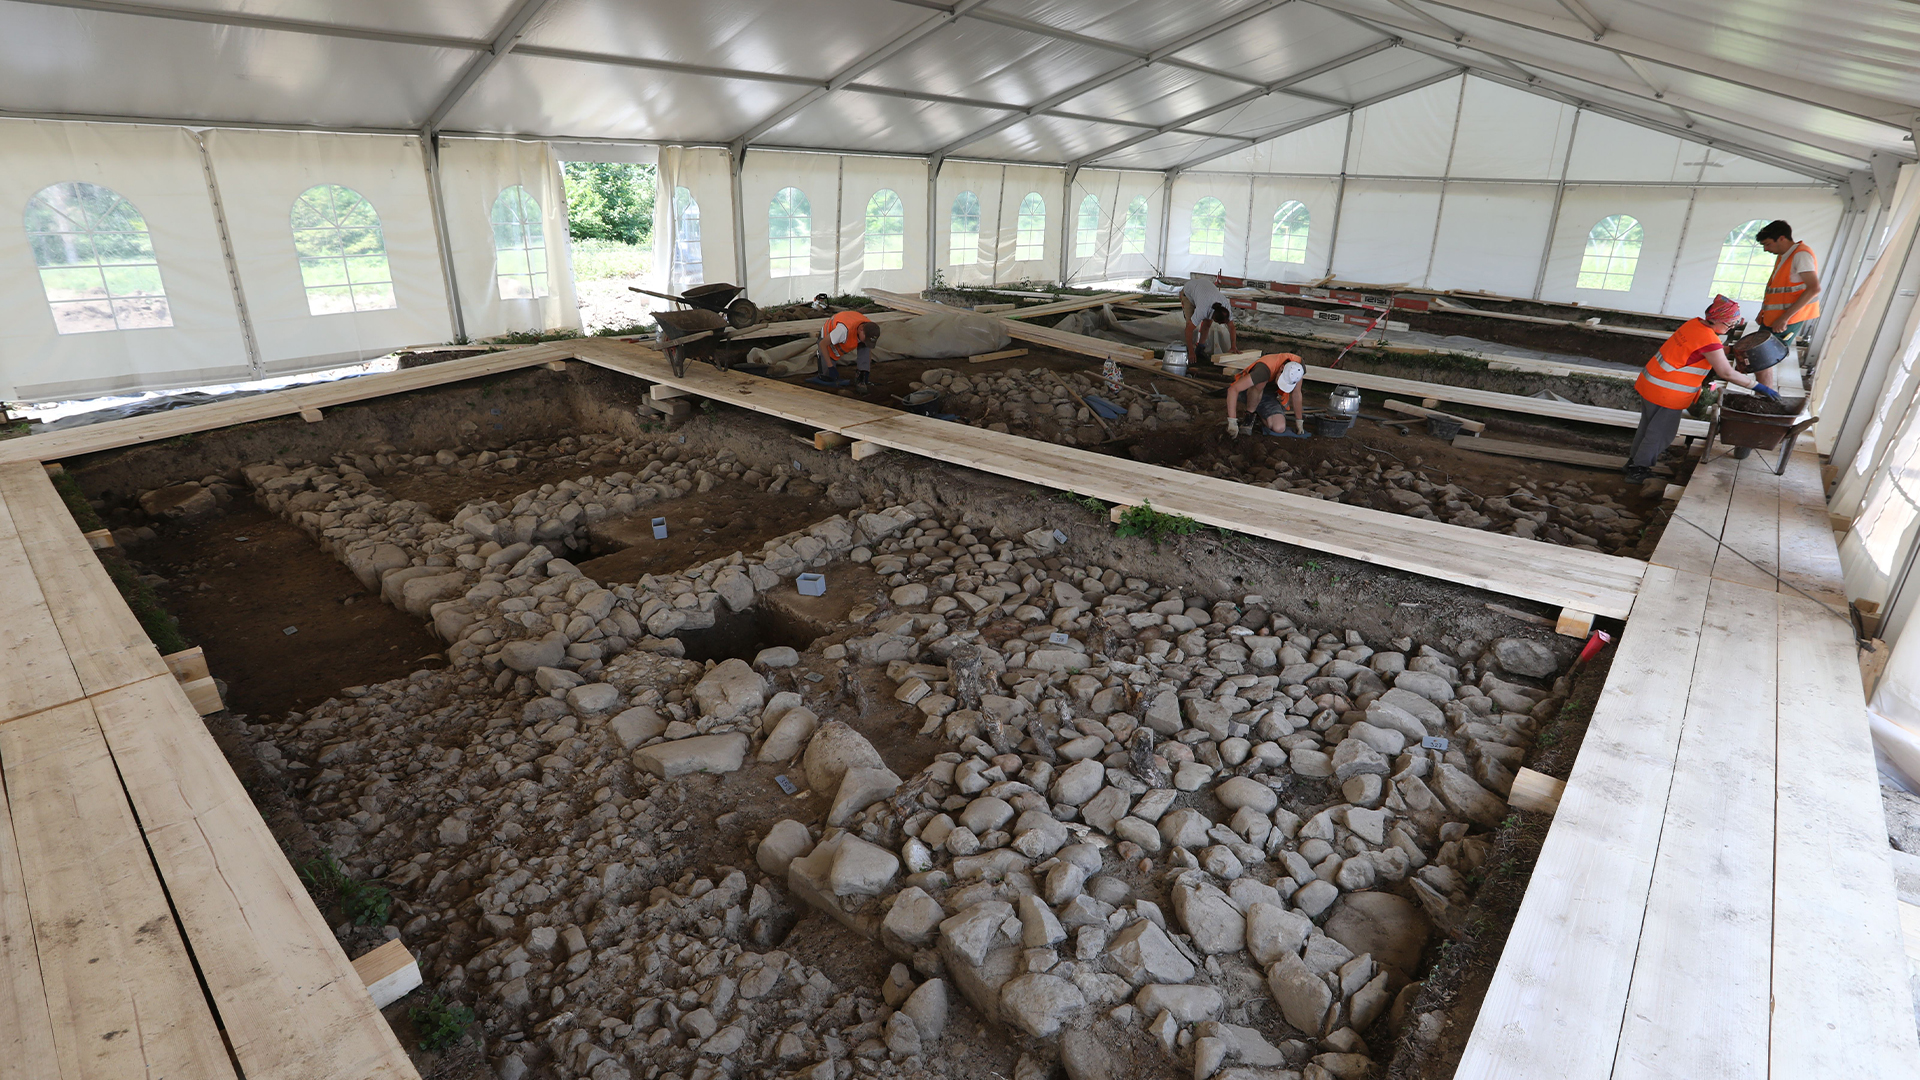 Menggali bagian dinding terbuka di situs arkeologi Cham-Äbnetwald di bawah tenda.